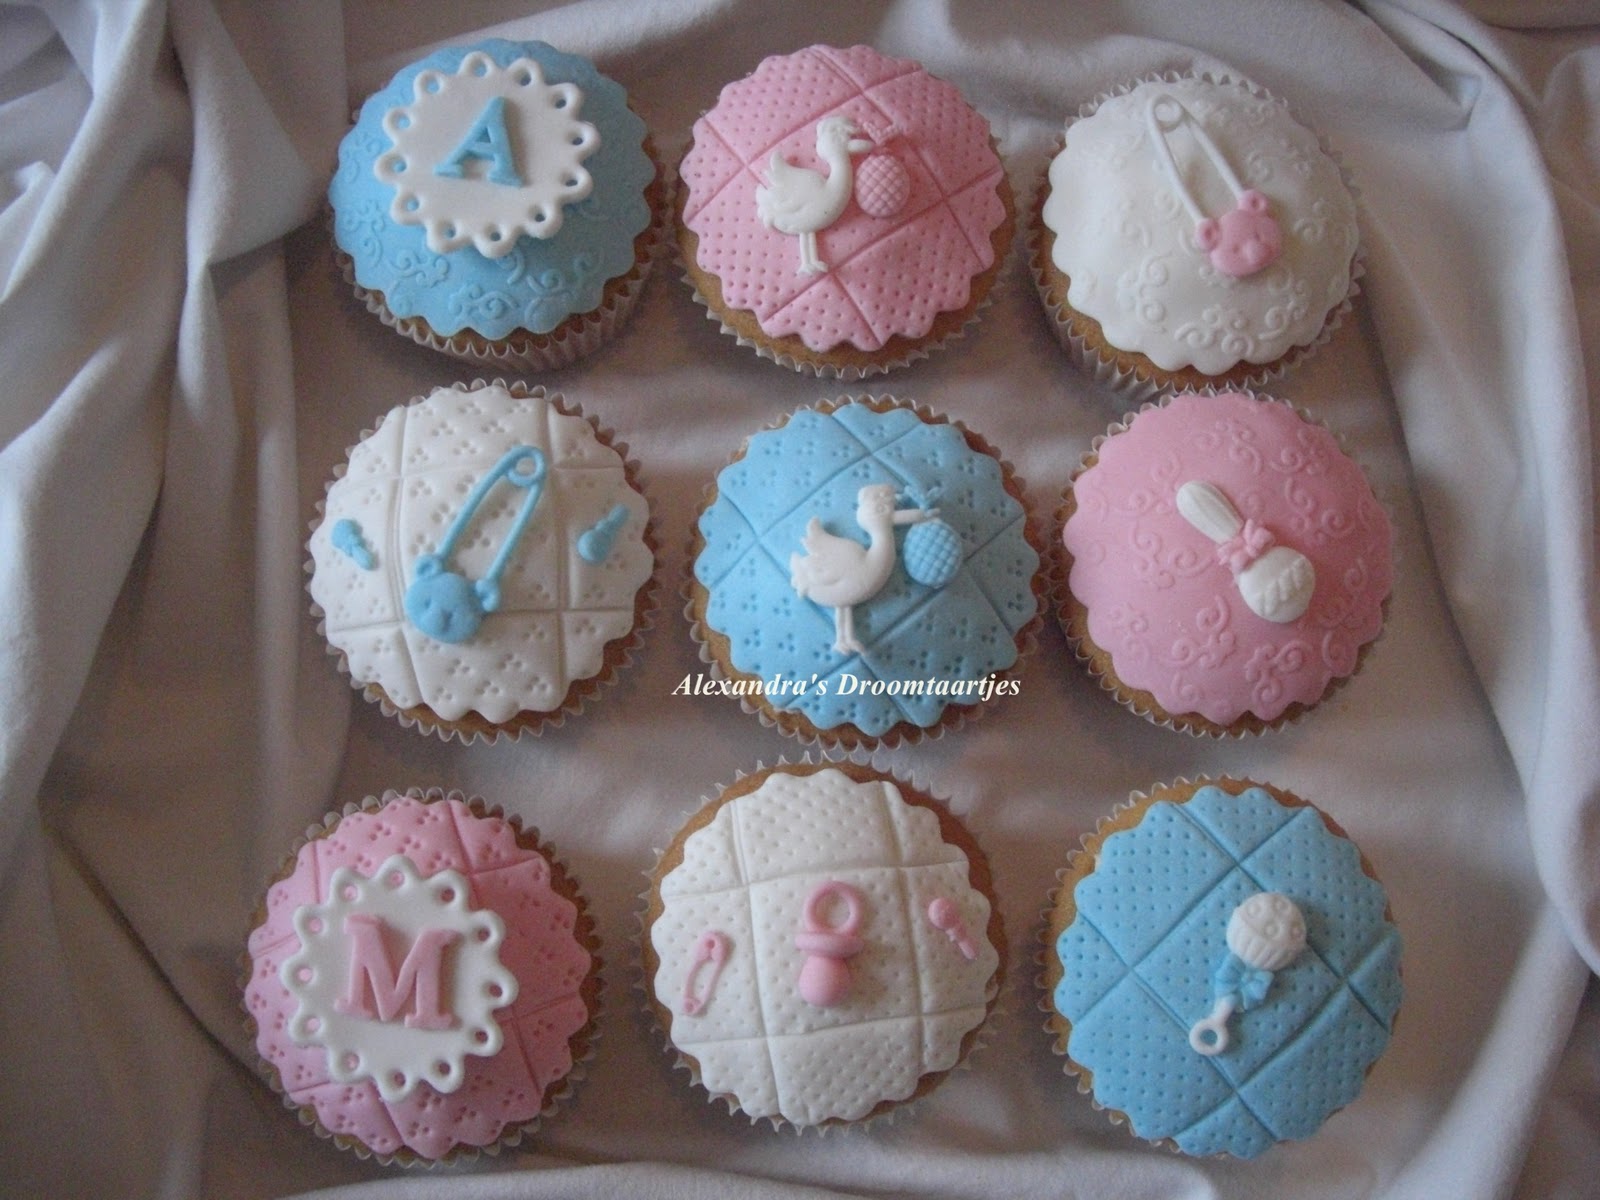 baden wakker worden enz Alexandra's droomtaartjes: Baby shower cupcakes roze/blauw